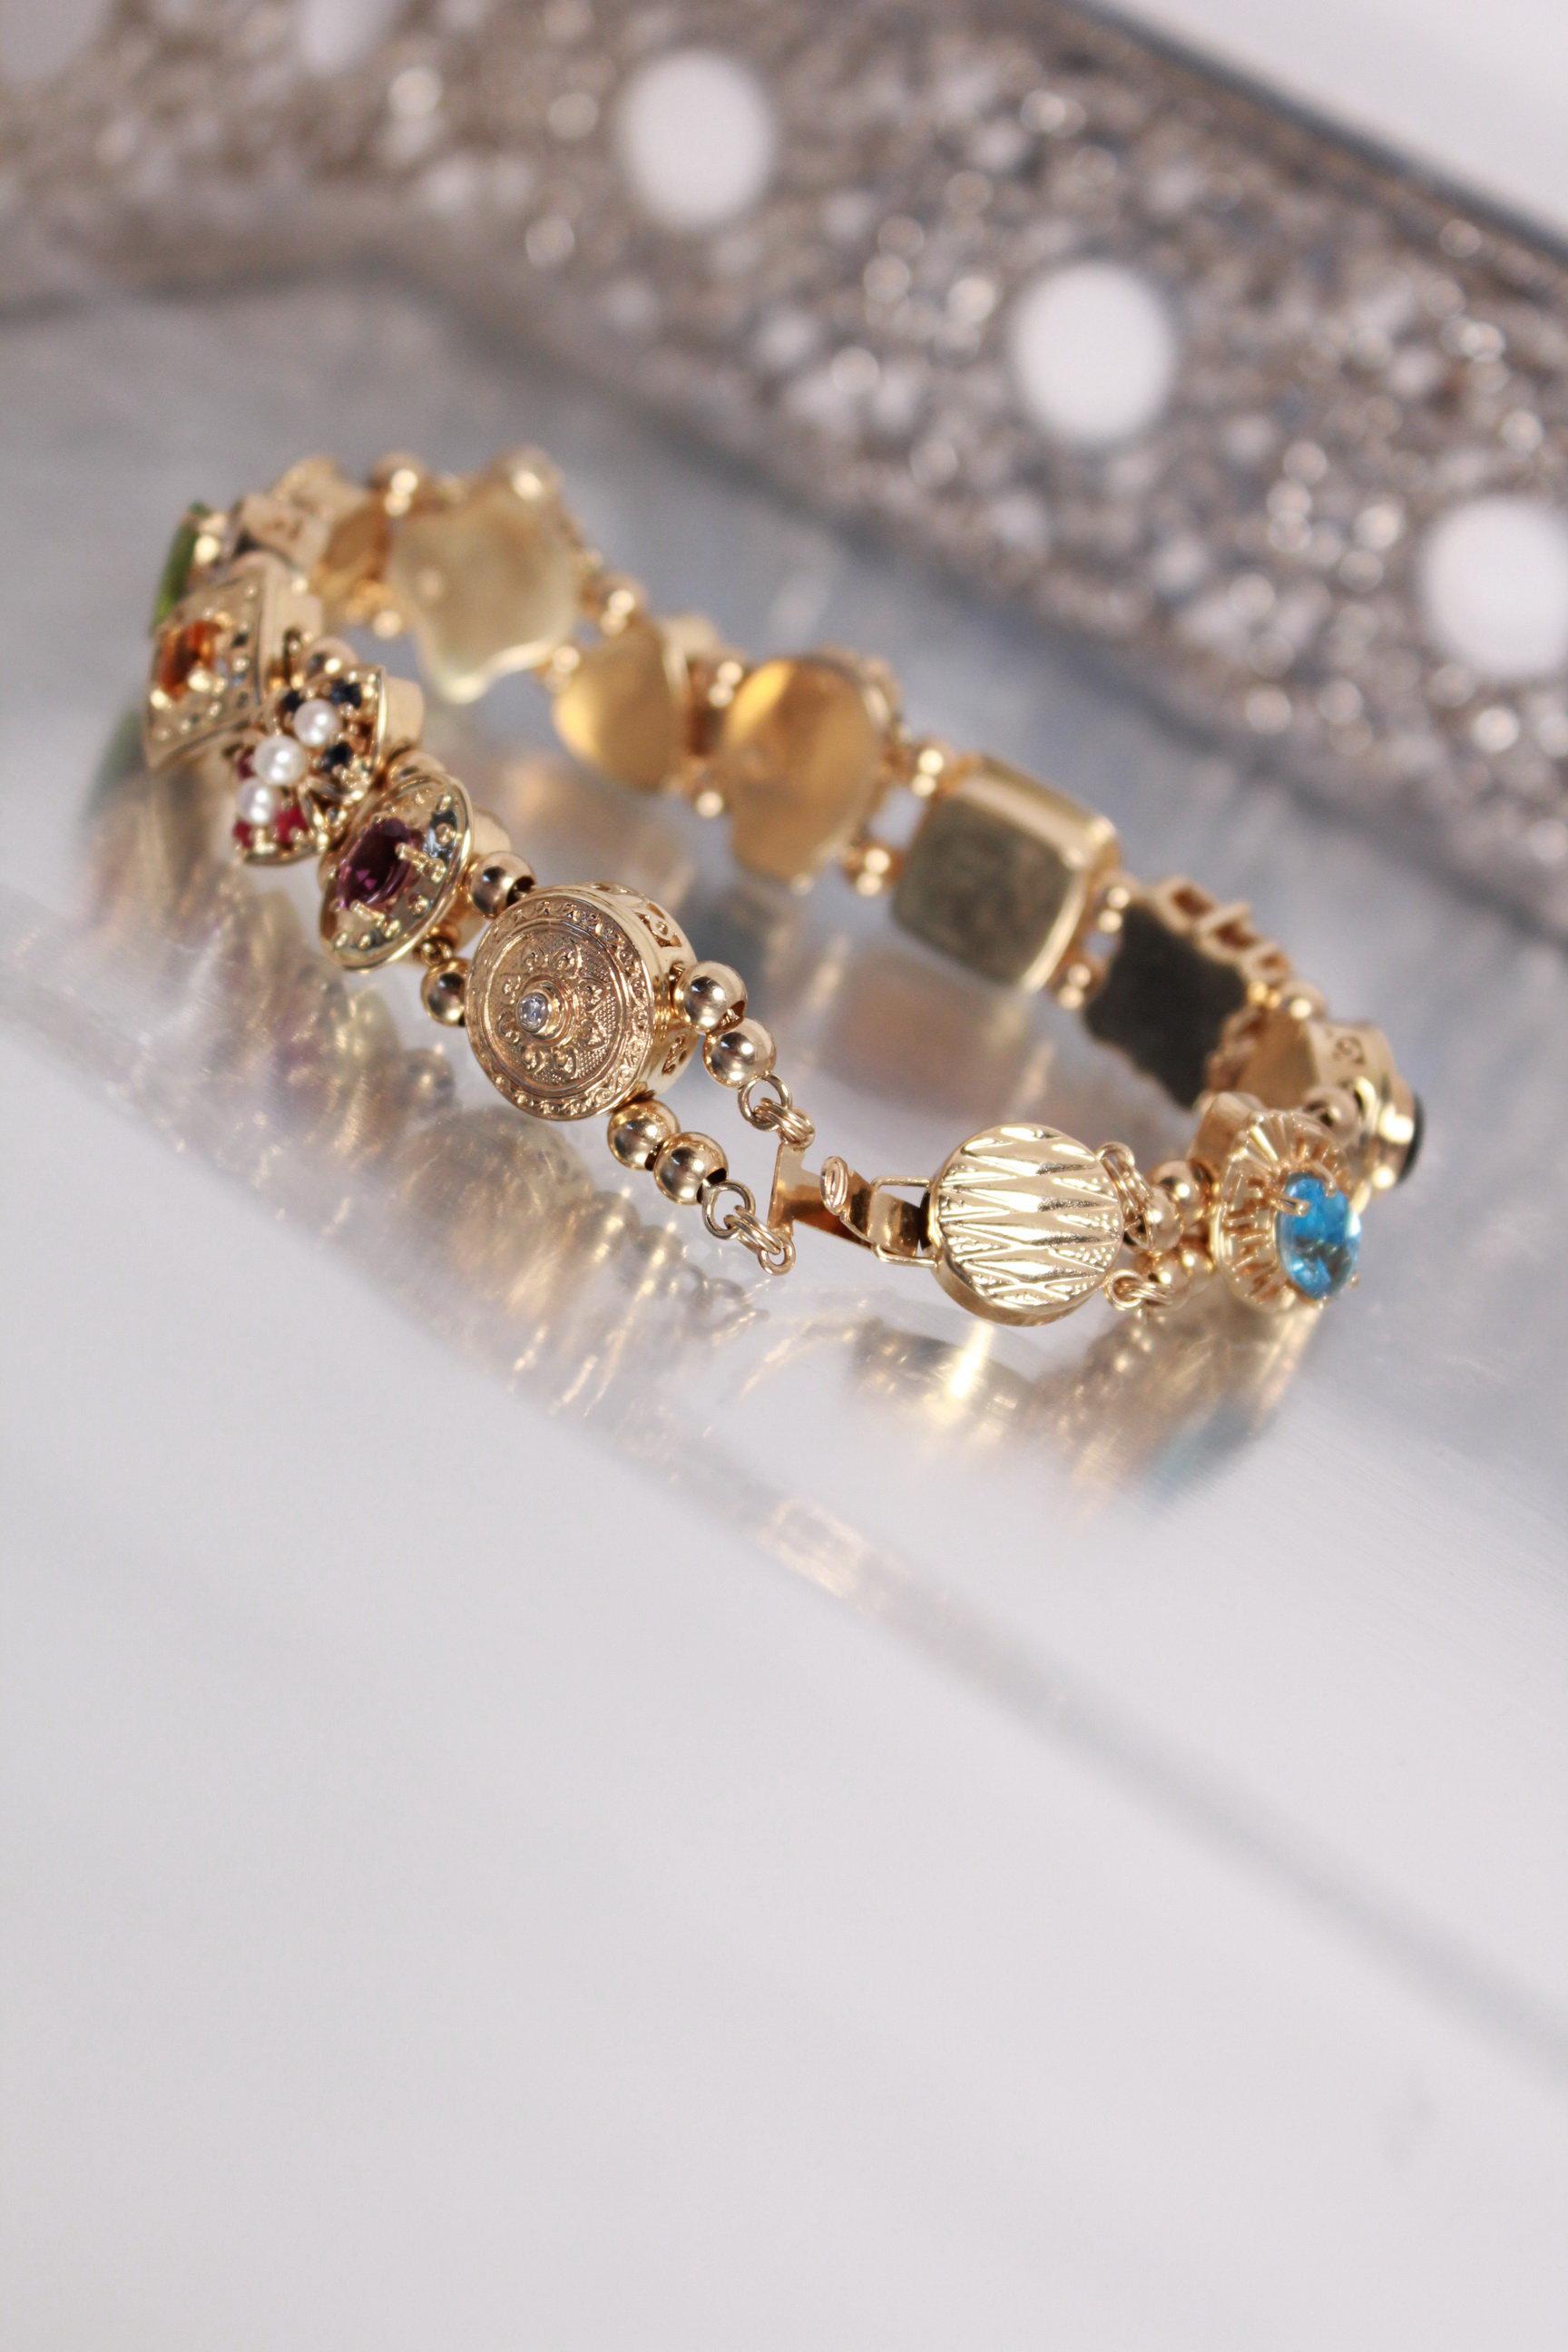 14k Gold & Gemstone, Heavy, Custom Gemstone Bracelet Set With Sky Blue Topaz, Onyx, Tanzan